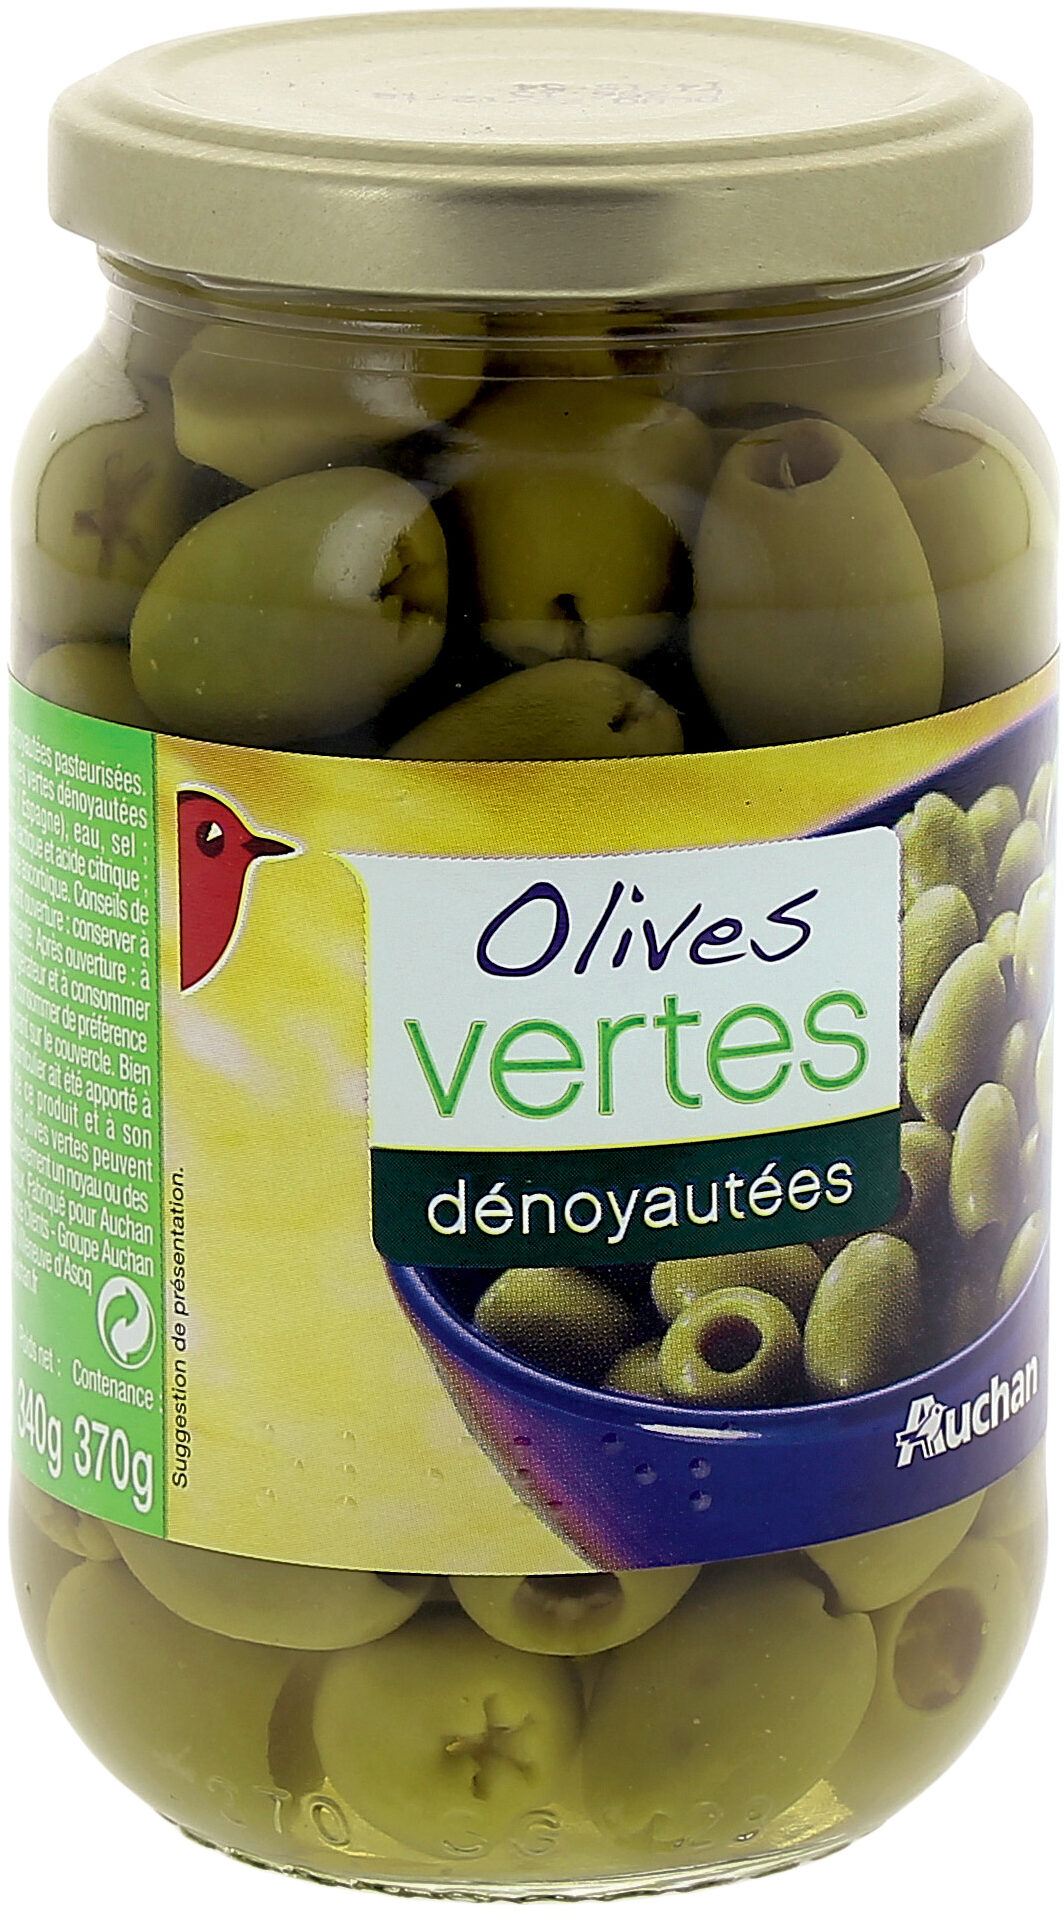 olives vertes dénoyautées - Produit